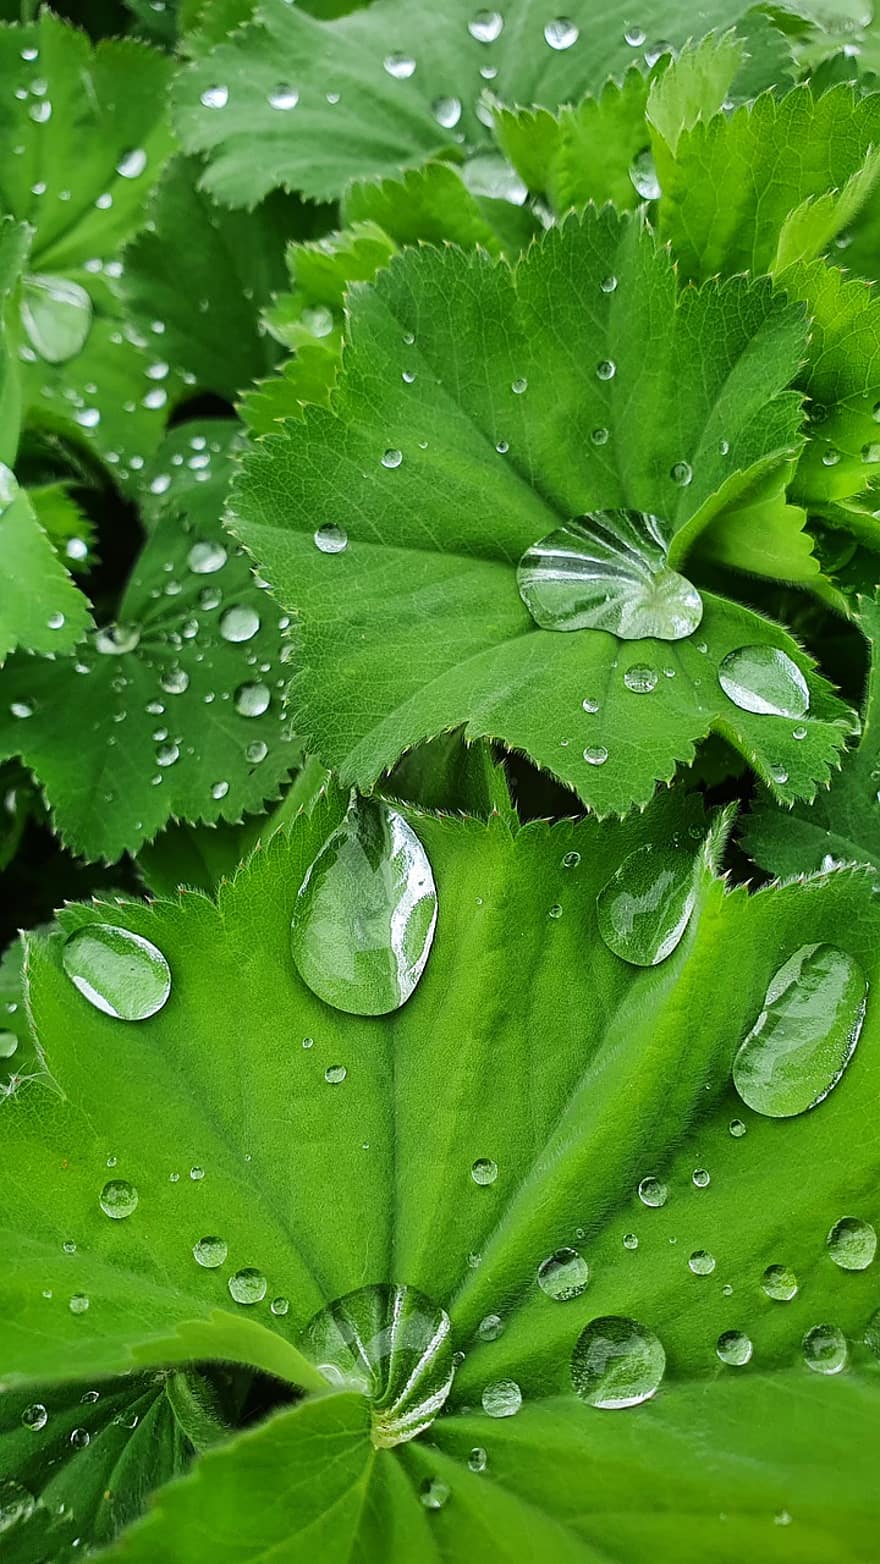 nhỏ giọt, đóng lại, cây, mưa, màu xanh lá, vườn